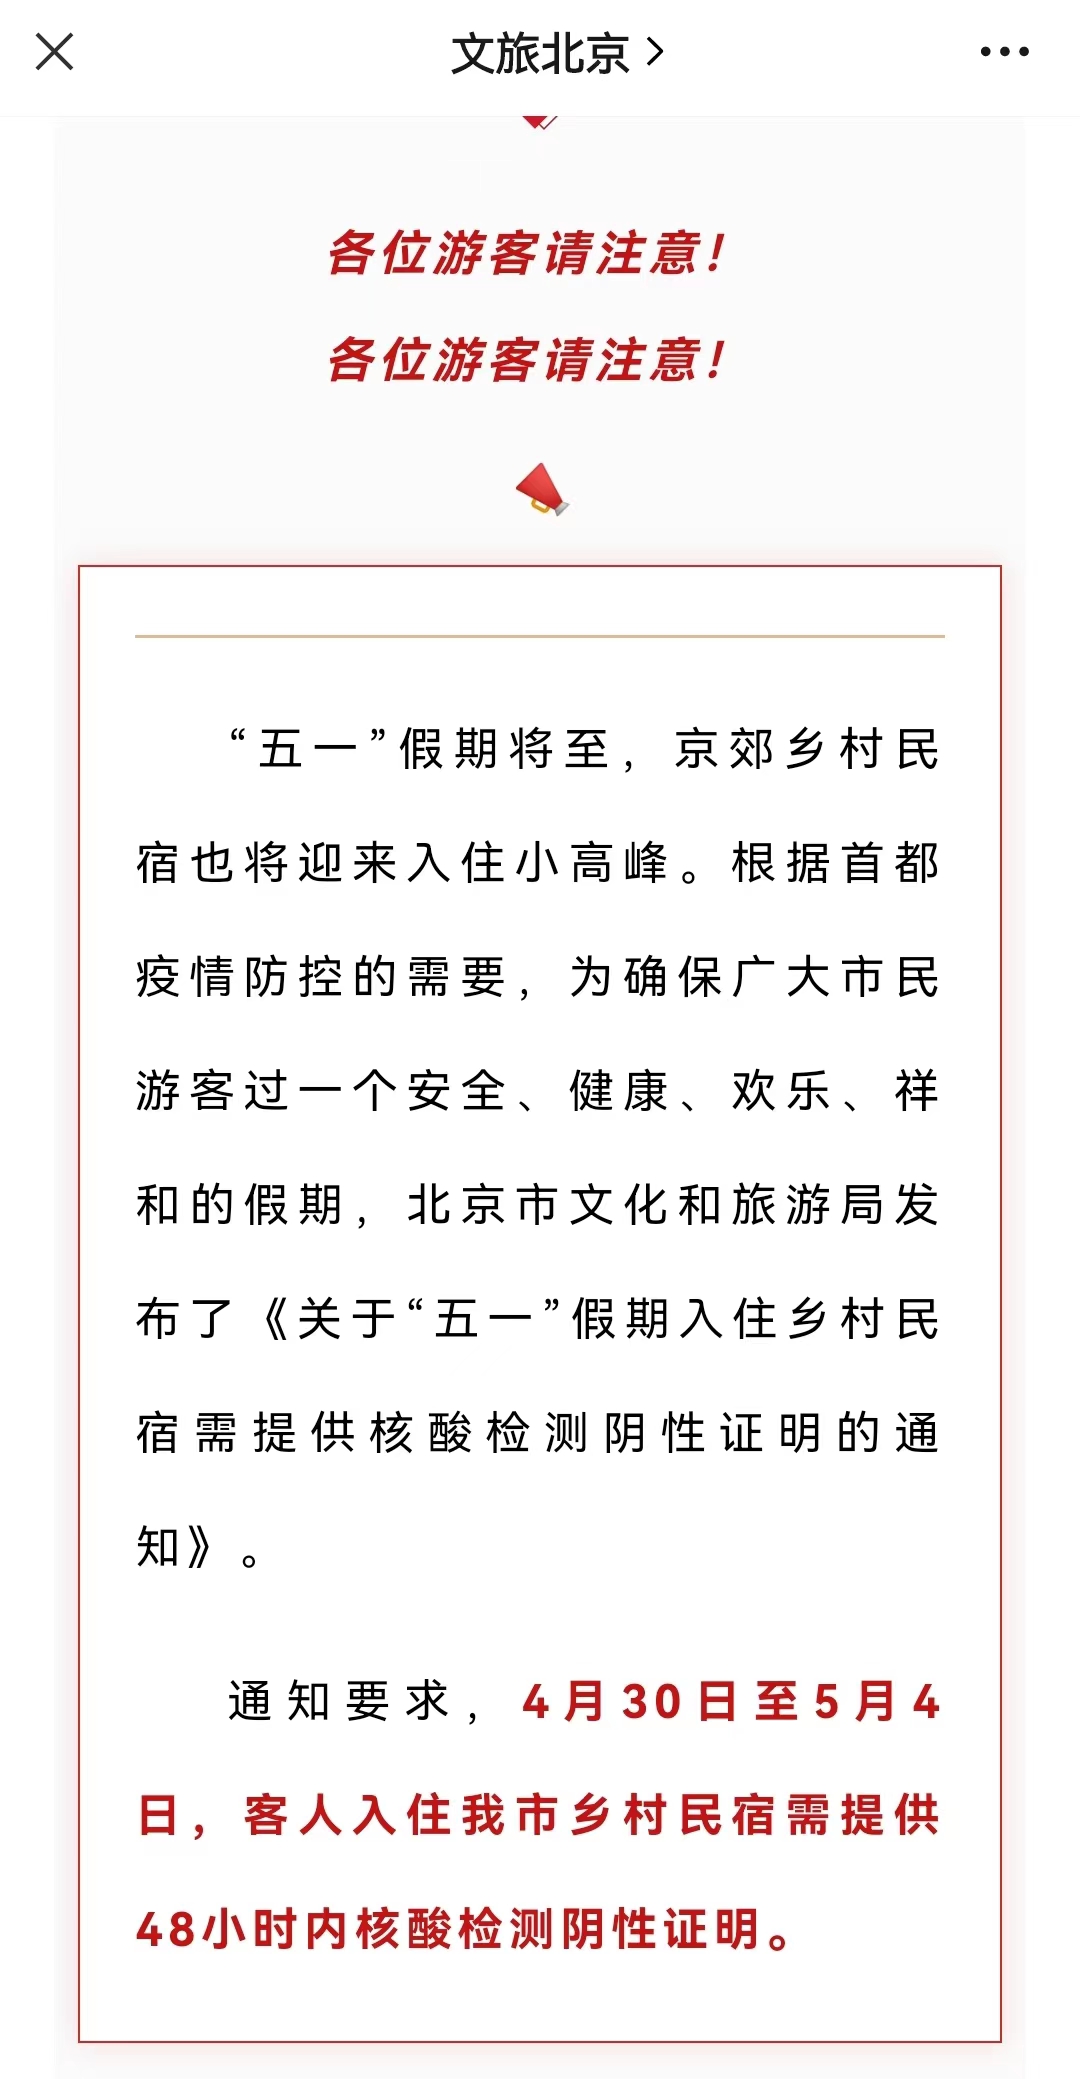 “文旅北京”微信公众号截图。